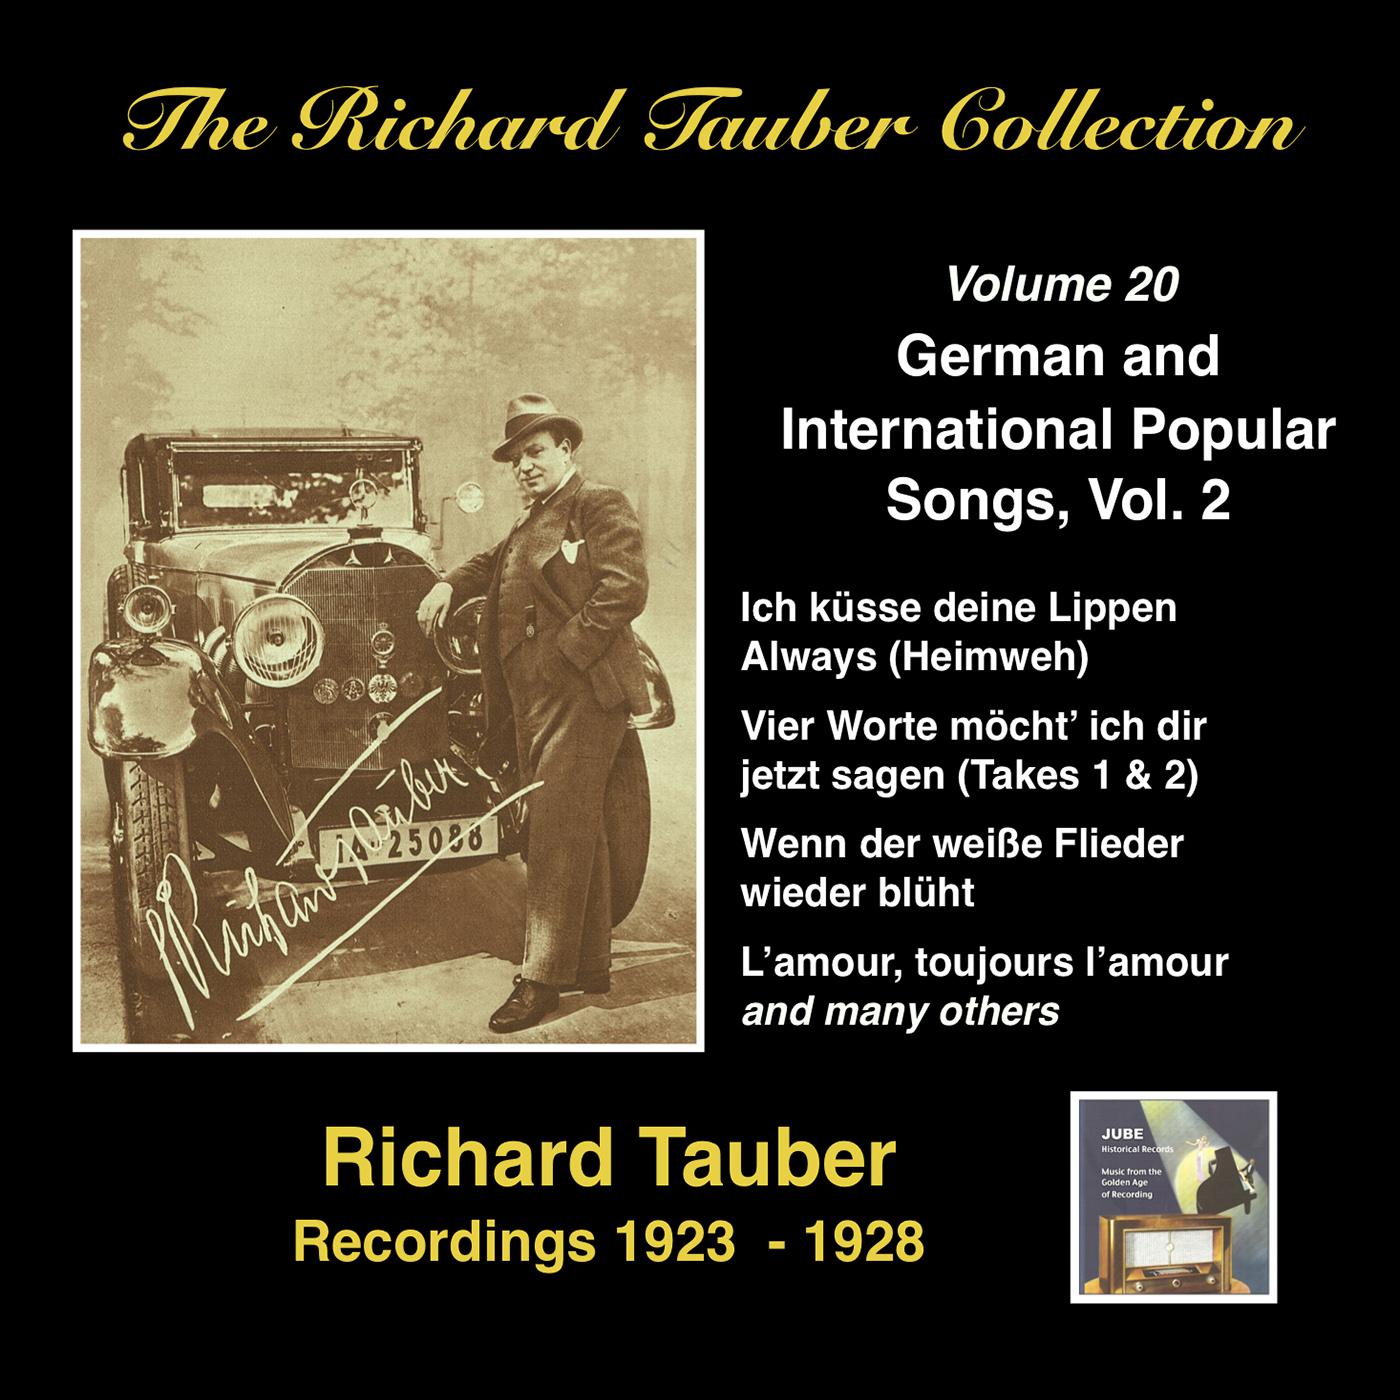 Richard Tauber - Ballgefluster